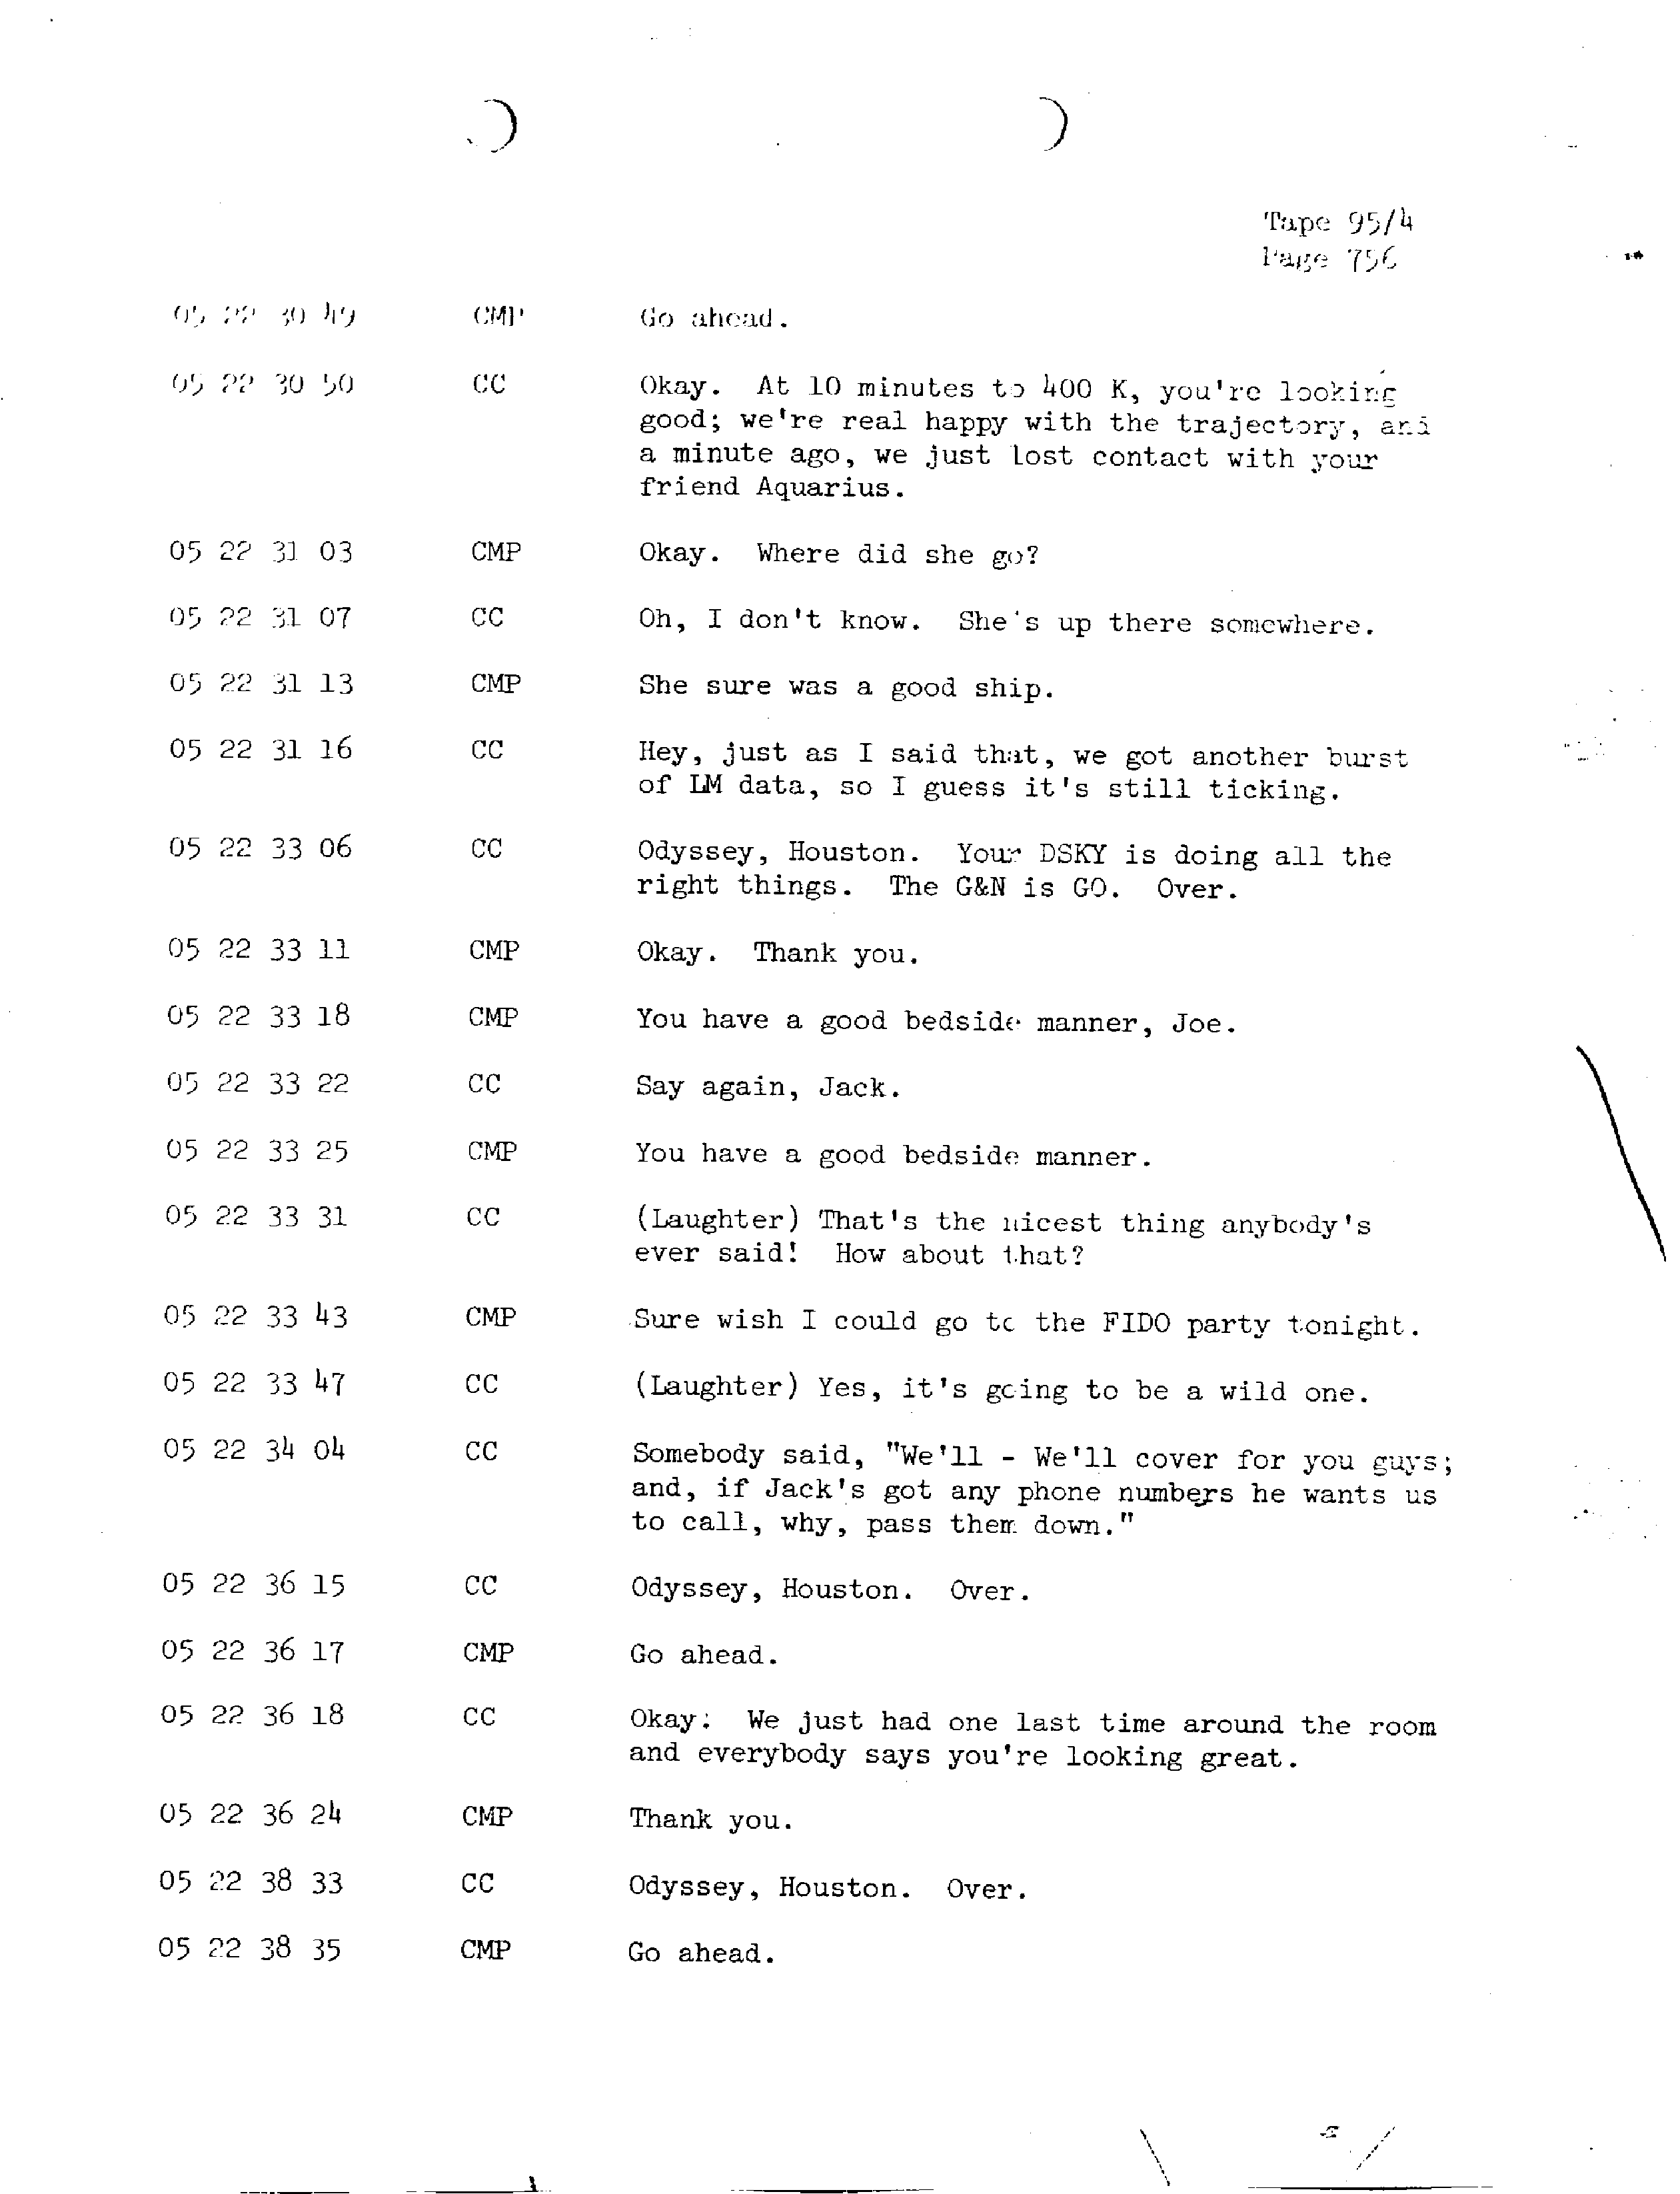 Page 763 of Apollo 13’s original transcript